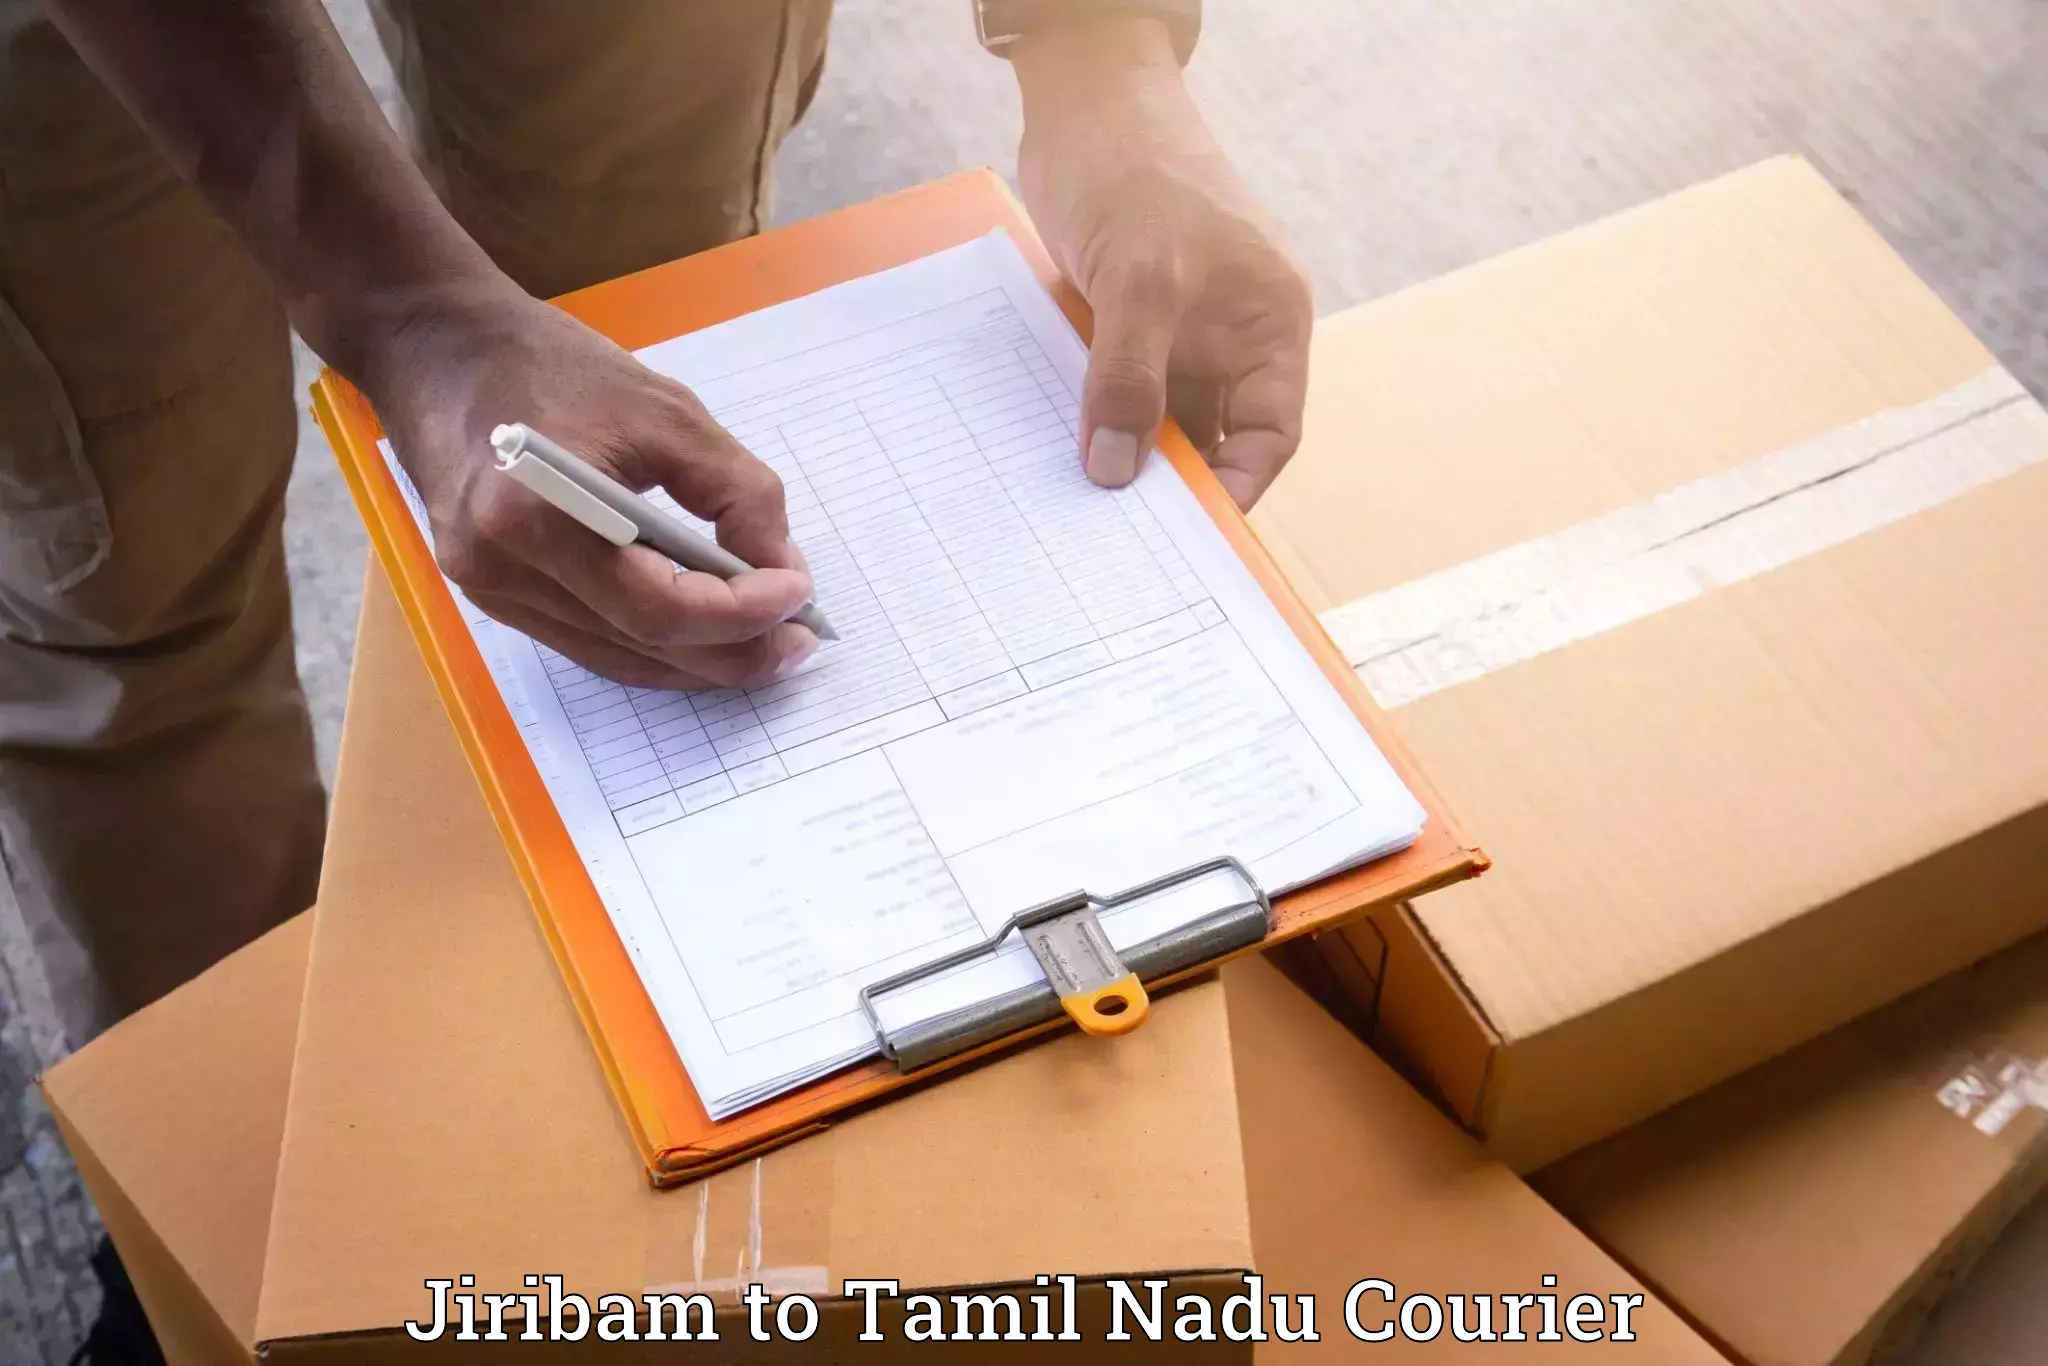 Efficient home movers Jiribam to Tiruchirappalli